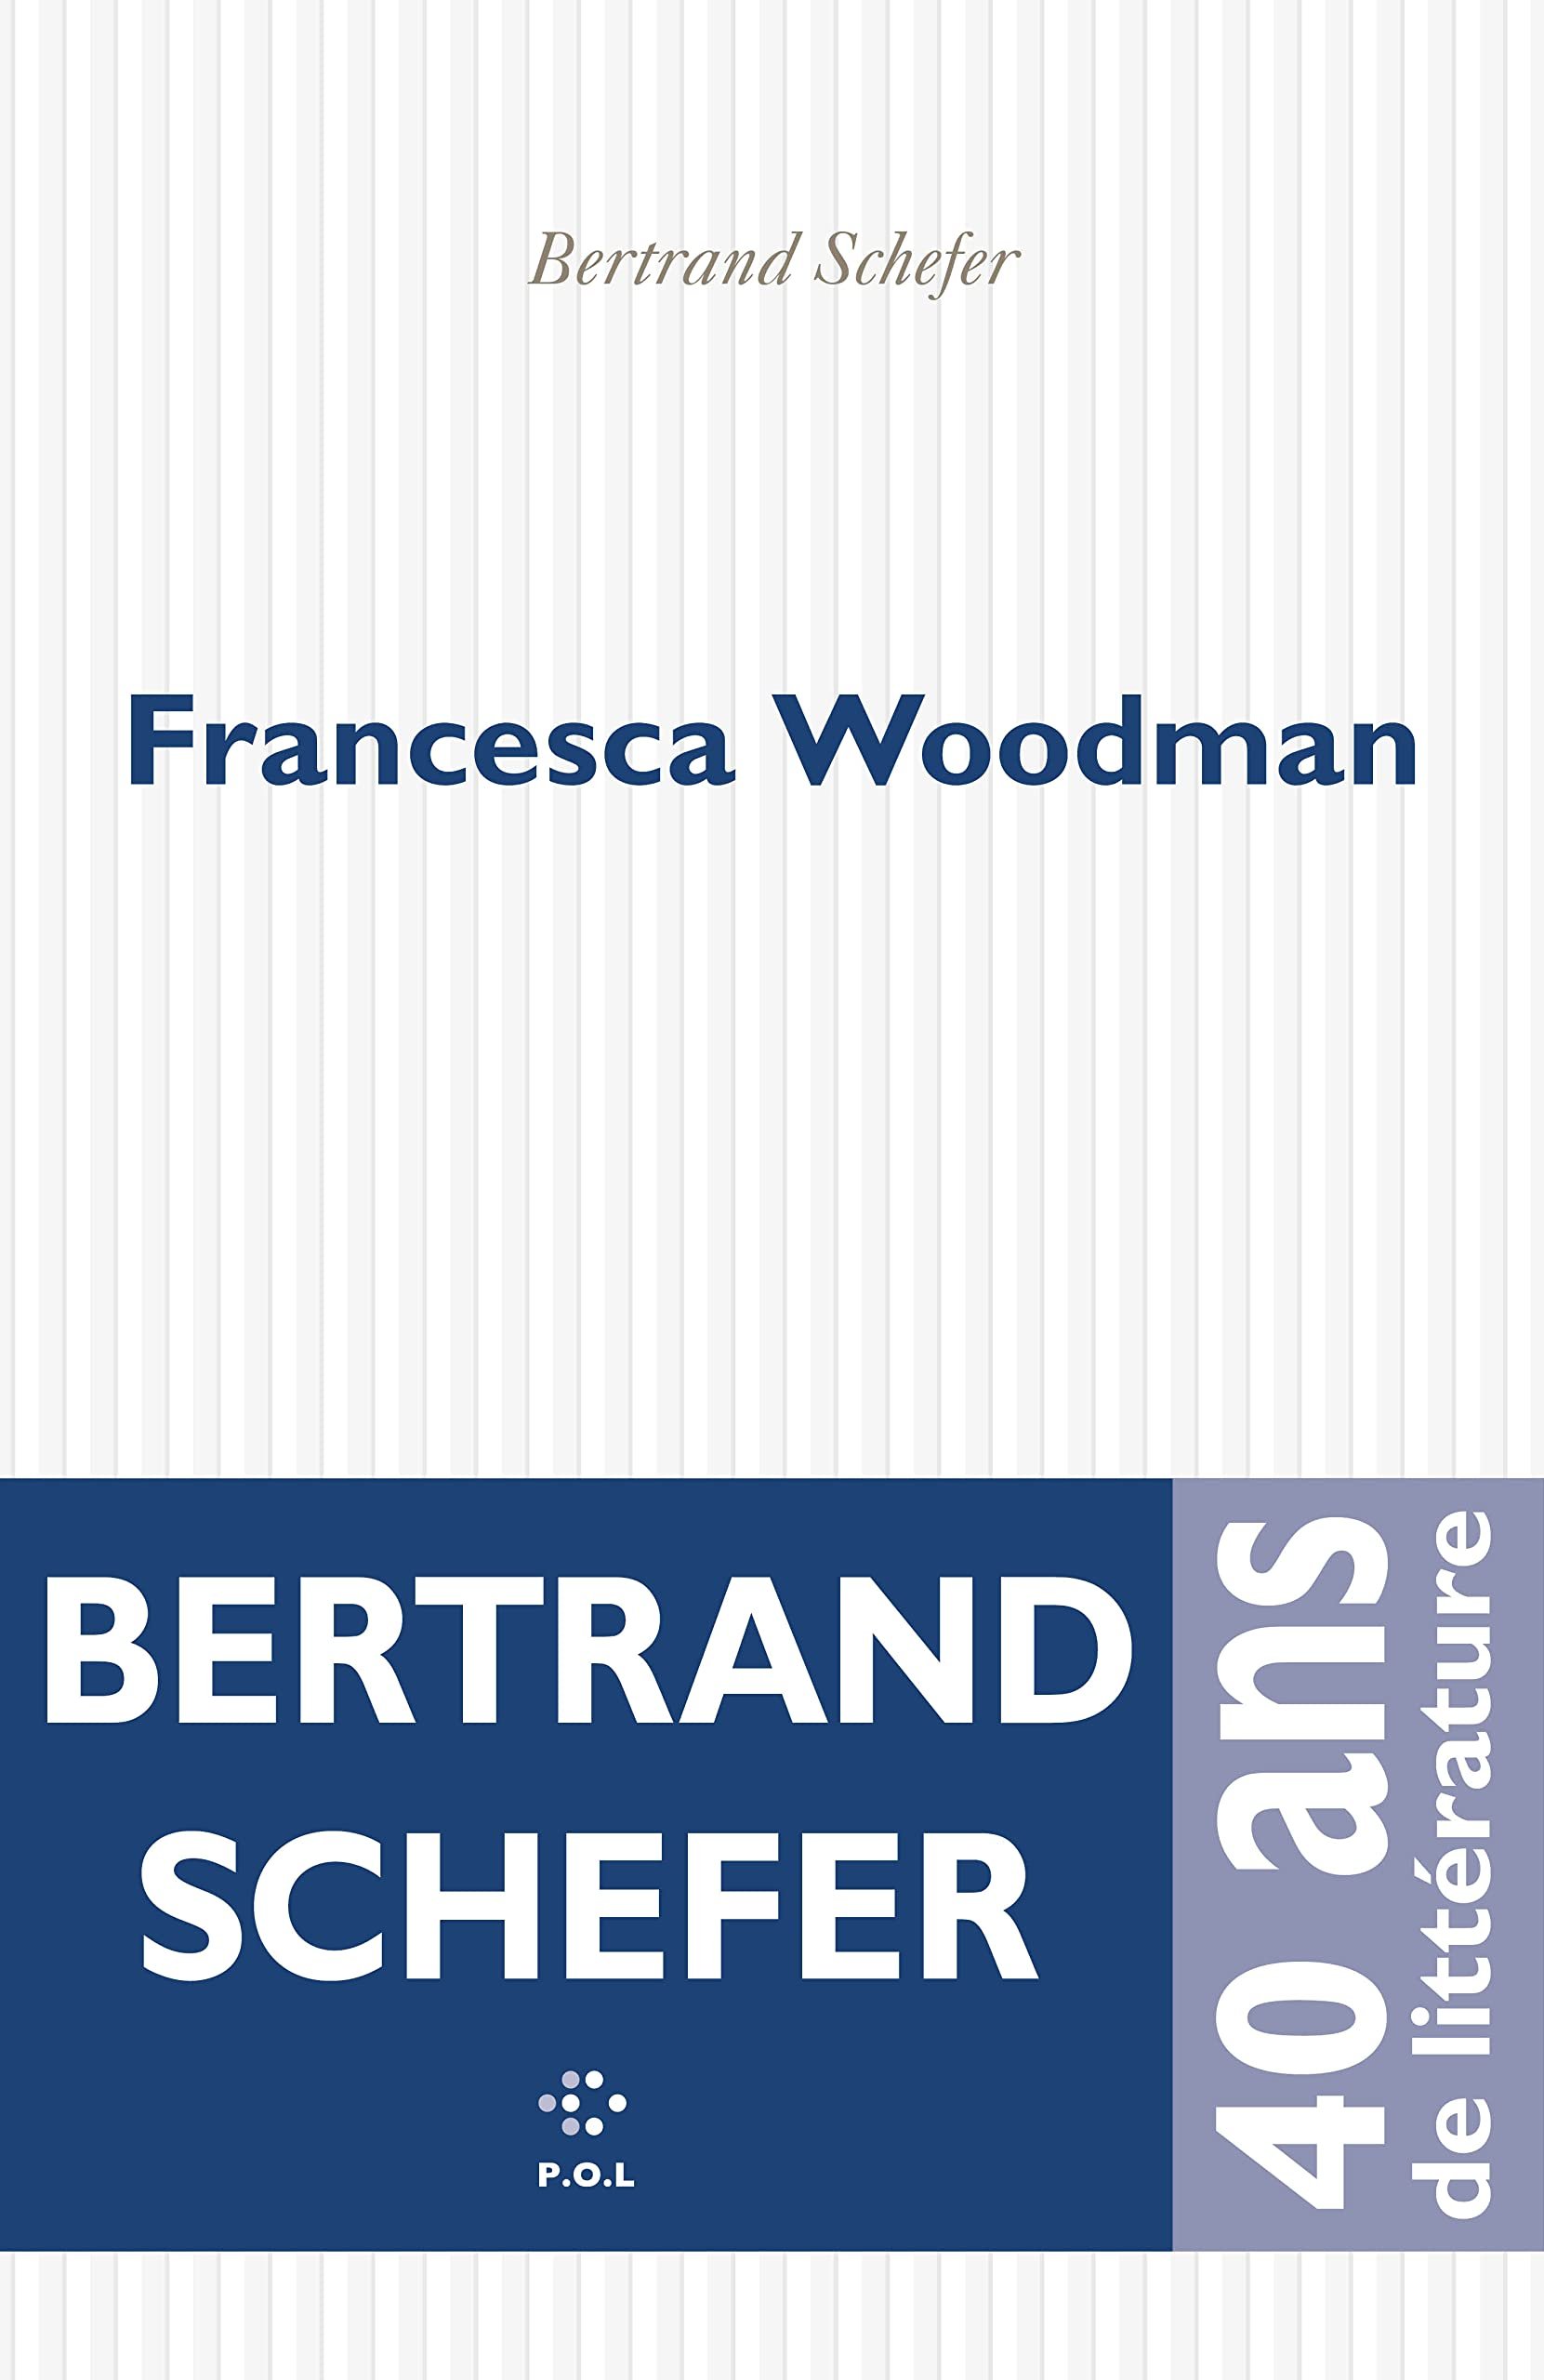 Bertrand Schefer – Francesca Woodman